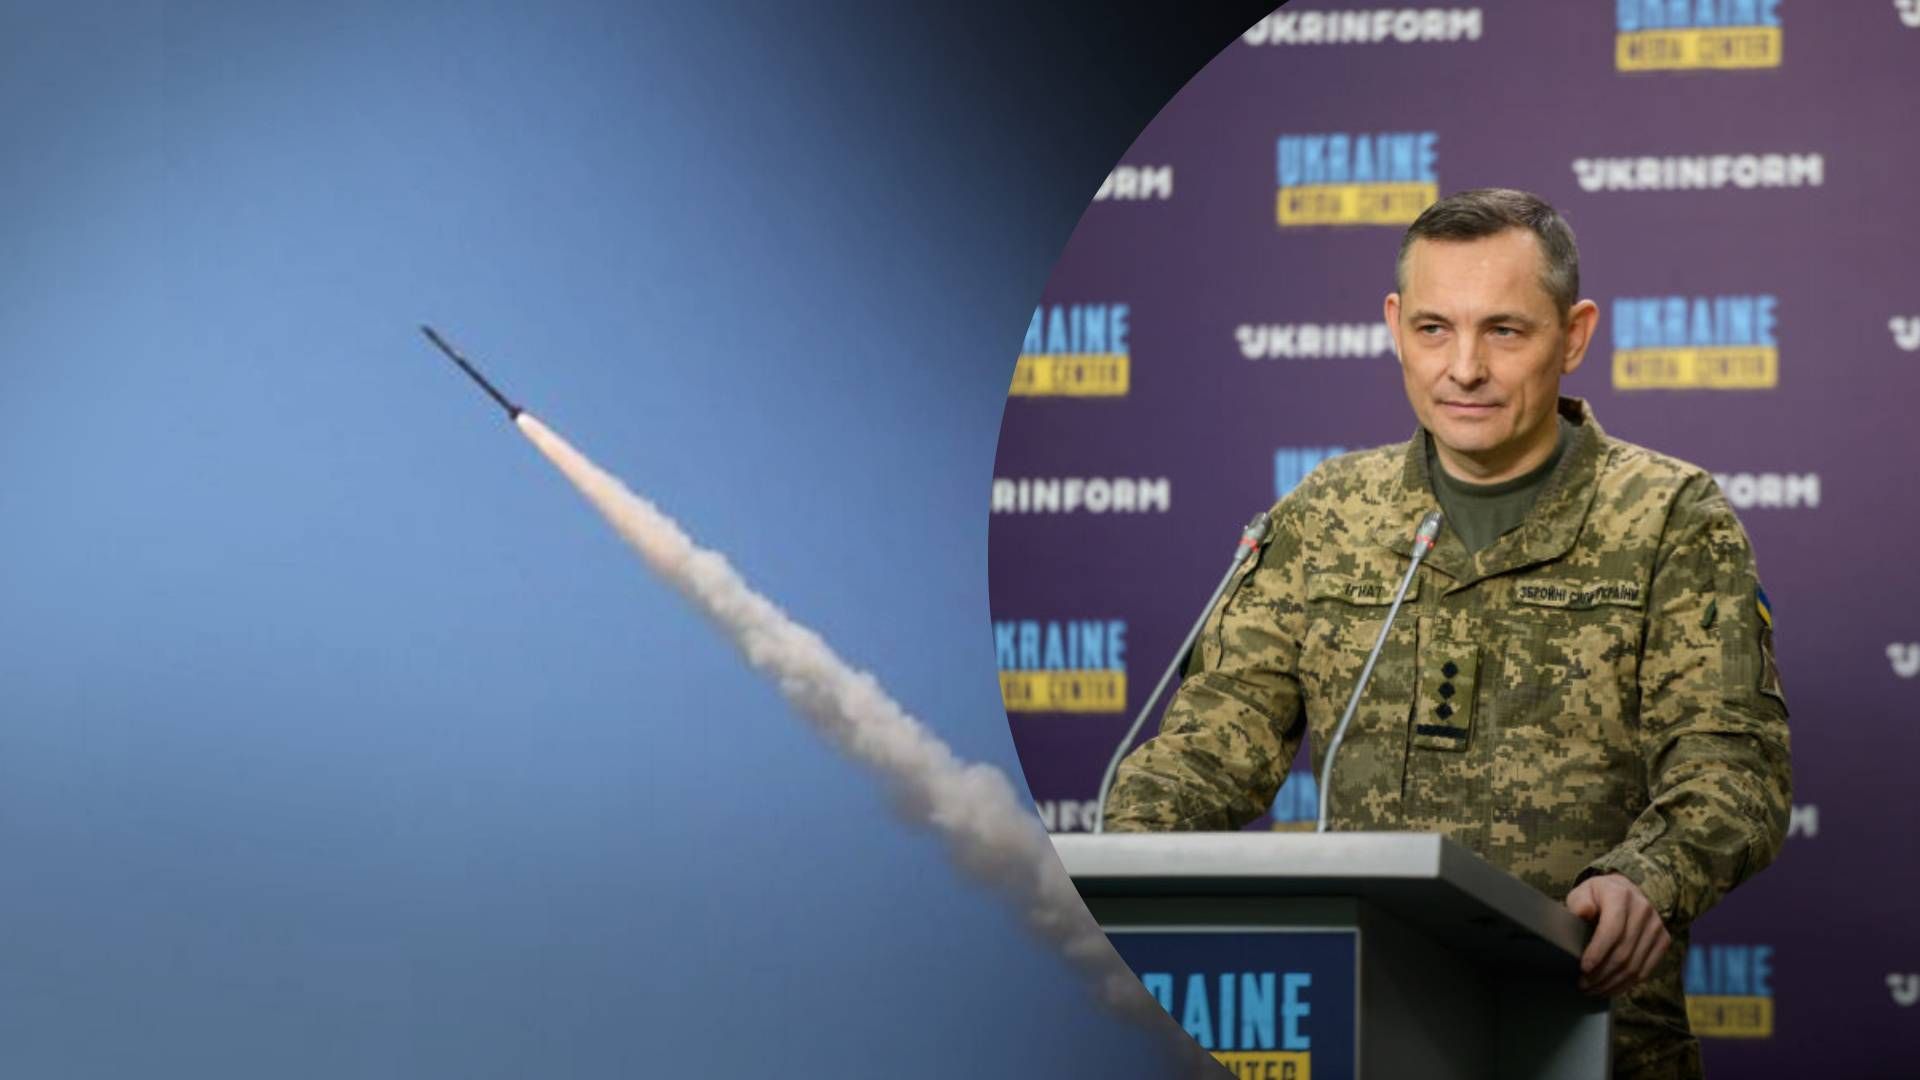 Игнат предположил, почему враг не бьет ракетами - 24 Канал